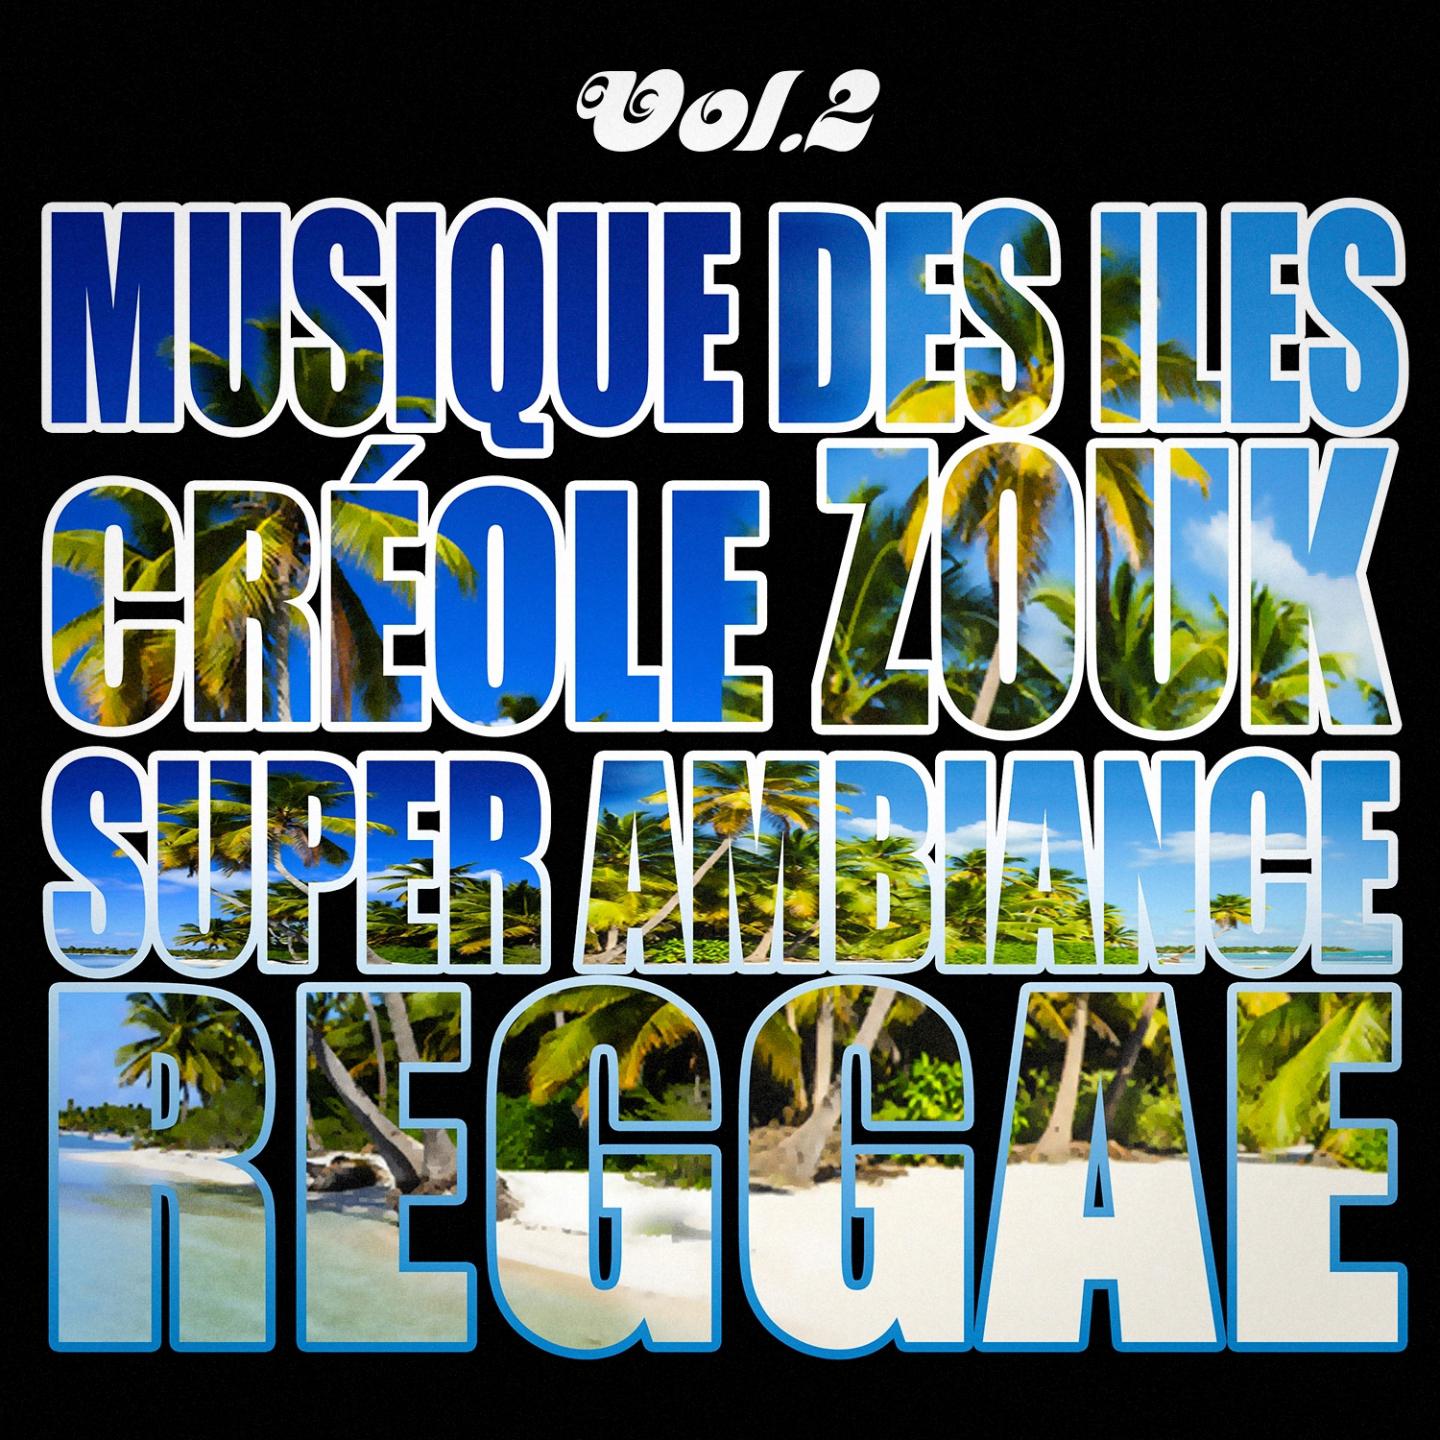 Musiques des les : cre ole, ambiance, zouk, reggae, vol. 2